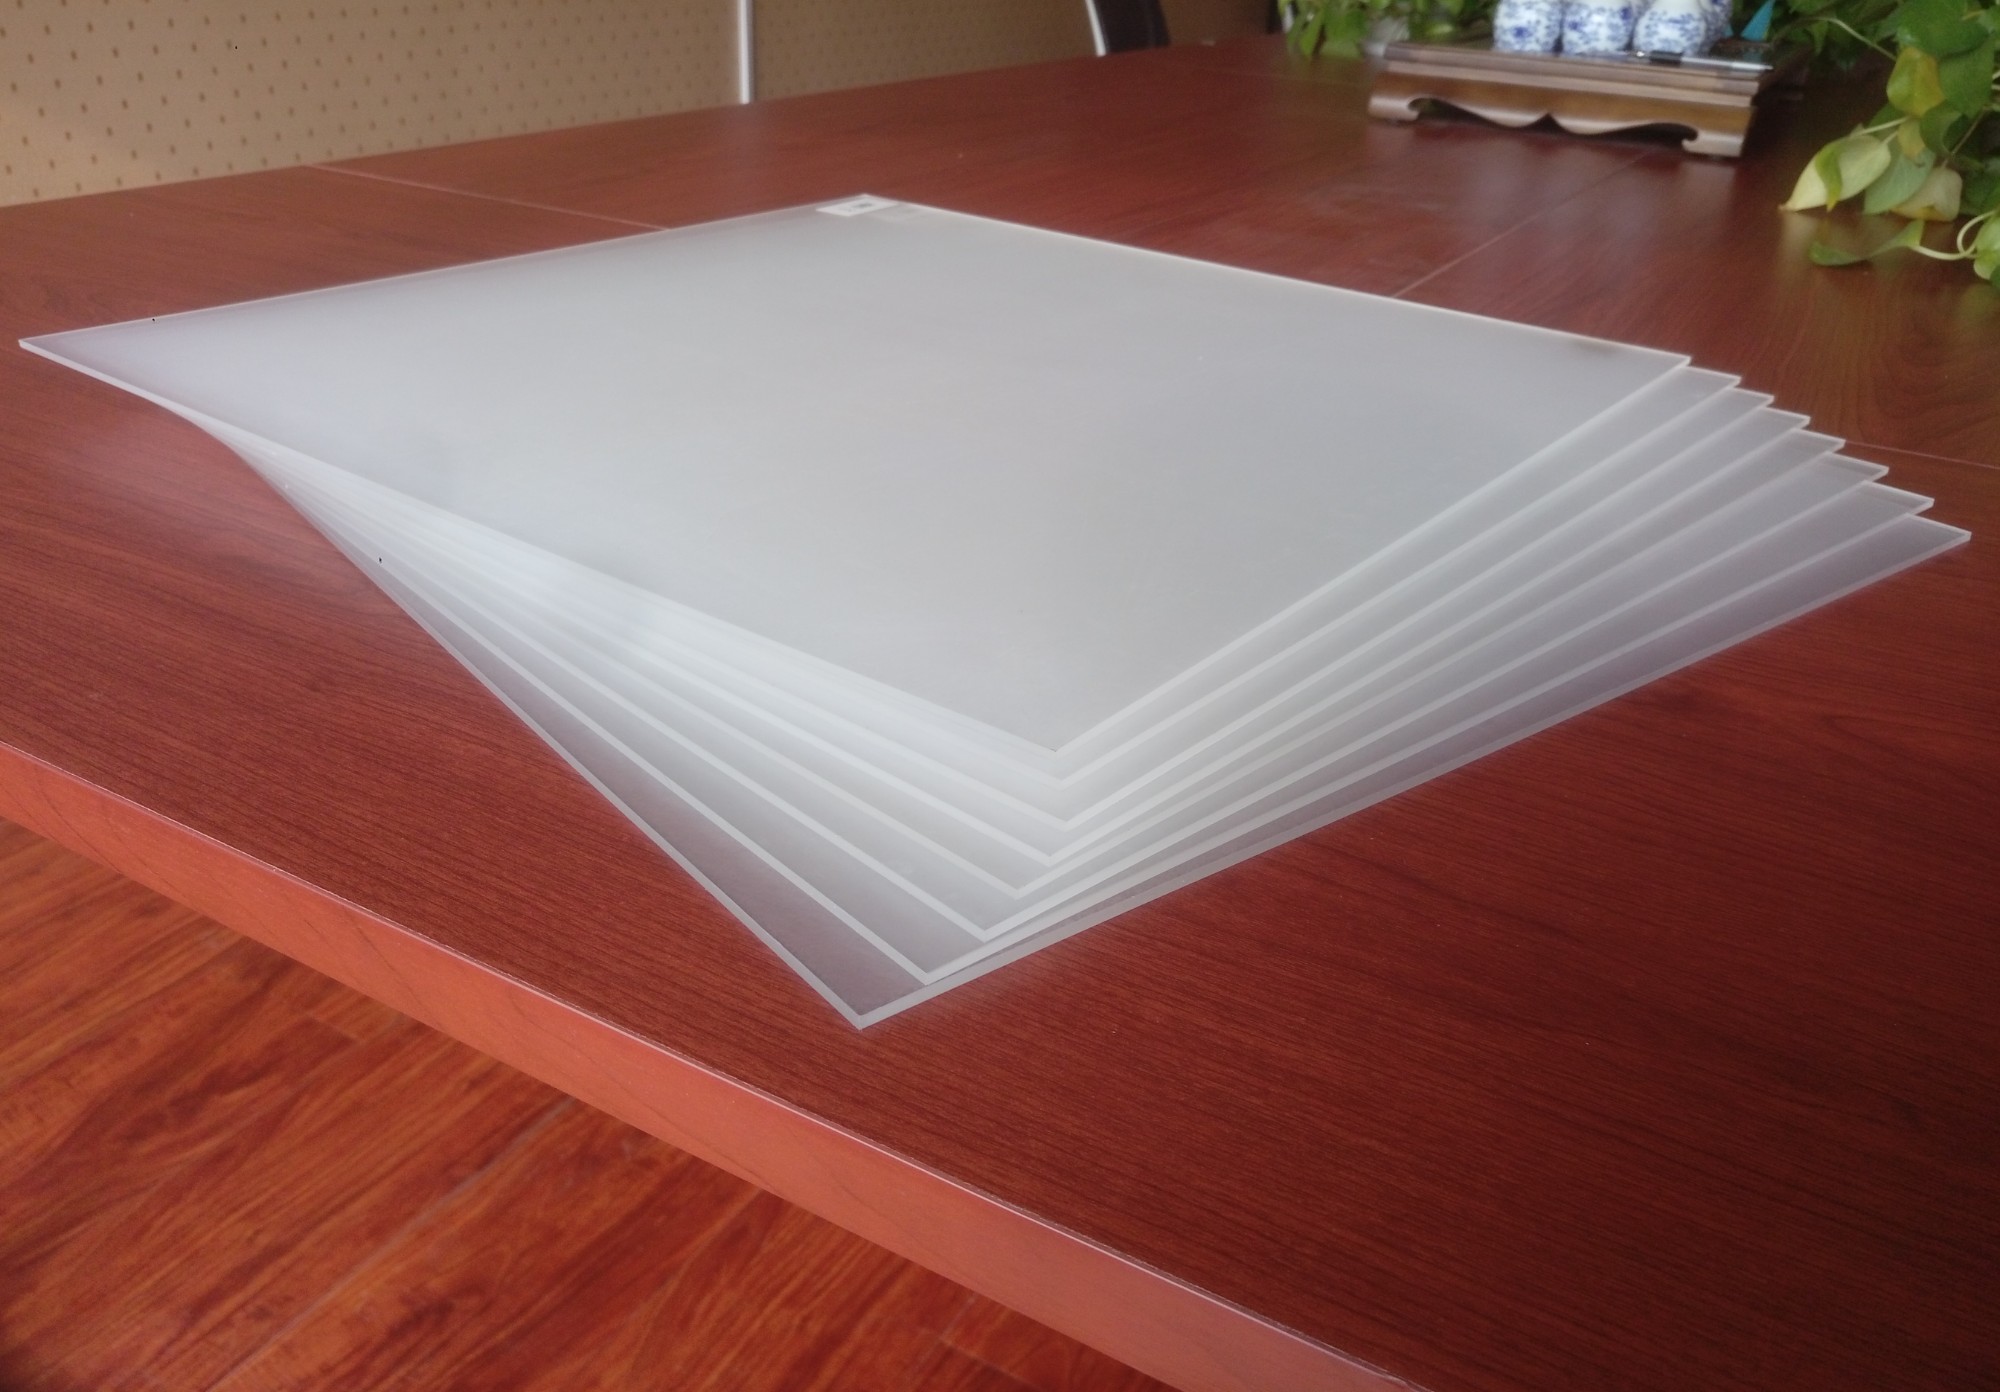 Китай Лист оргстекла прозрачный акриловый лист 3мм 4х8, производитель